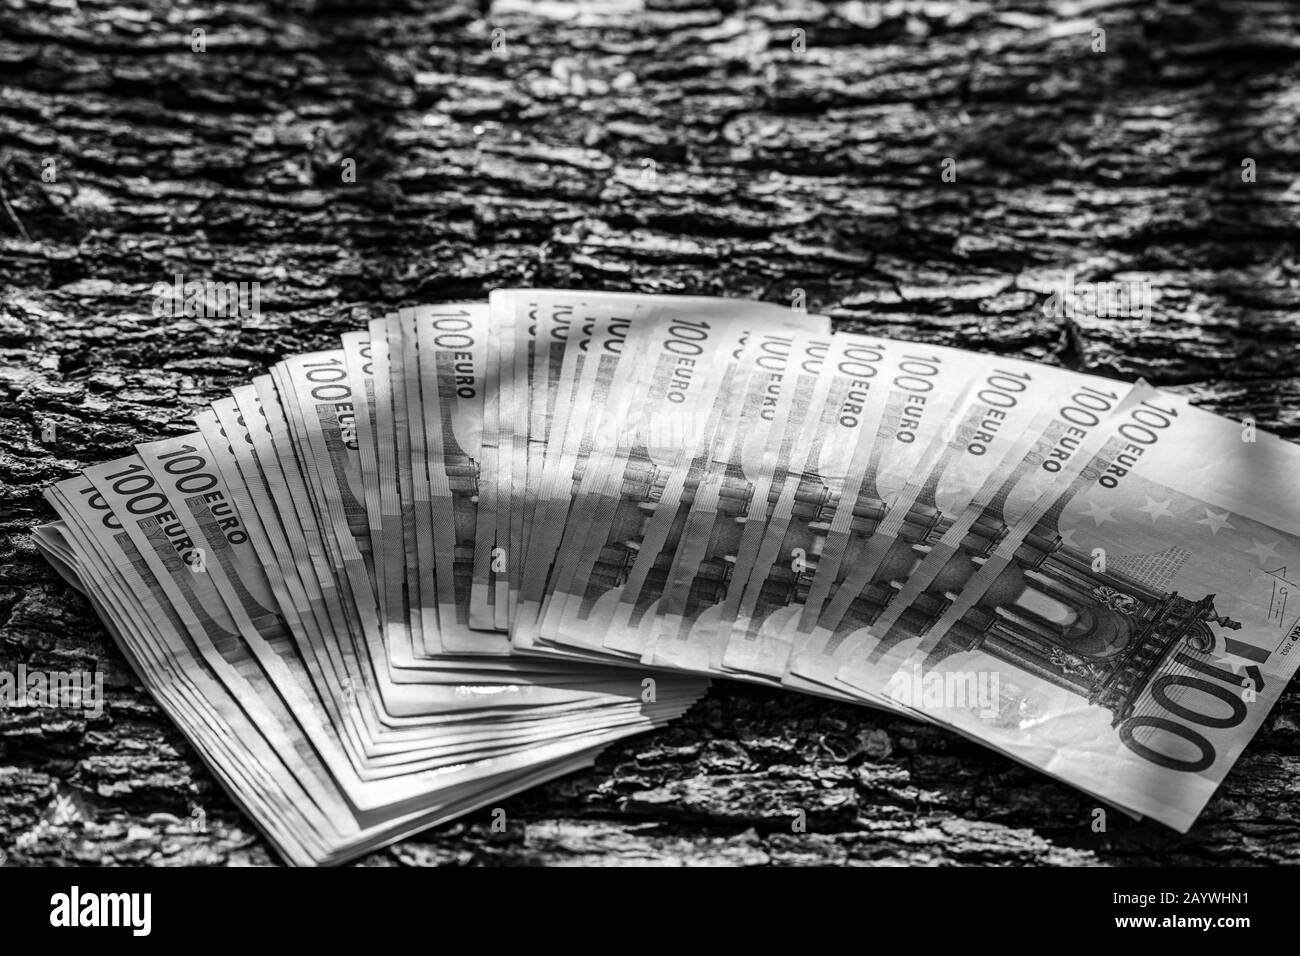 100 BANCONOTE IN EURO valuta in euro isolata su tessuto di legno all'aperto alla luce del sole. Concetto di ricchi uomini d'affari, risparmiare o spendere soldi. Foto Stock